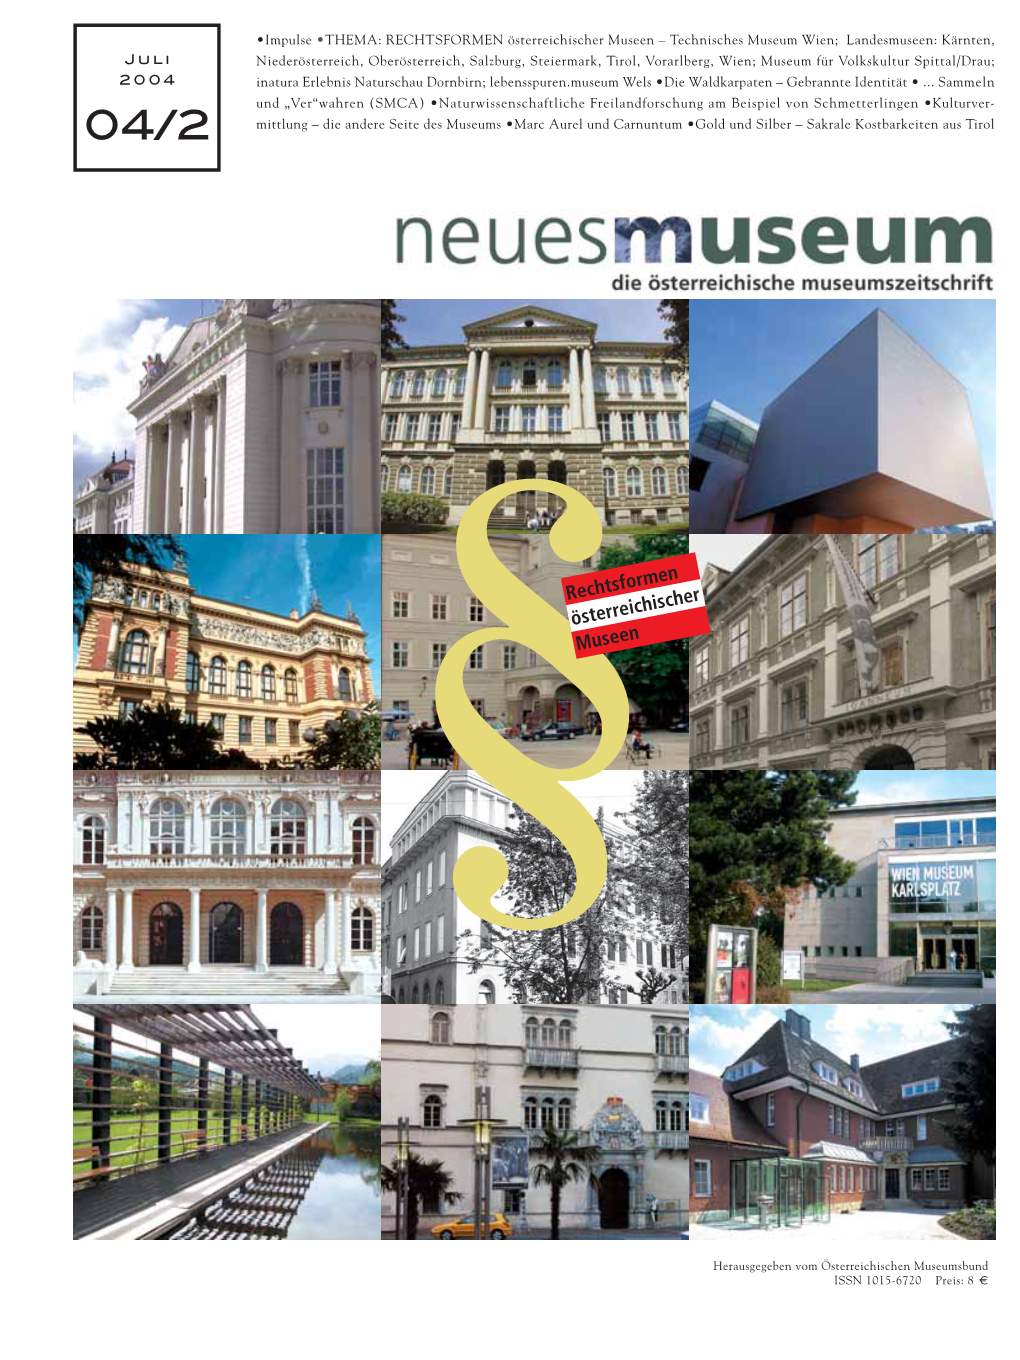 §Rechtsformen Österreichischer Museen